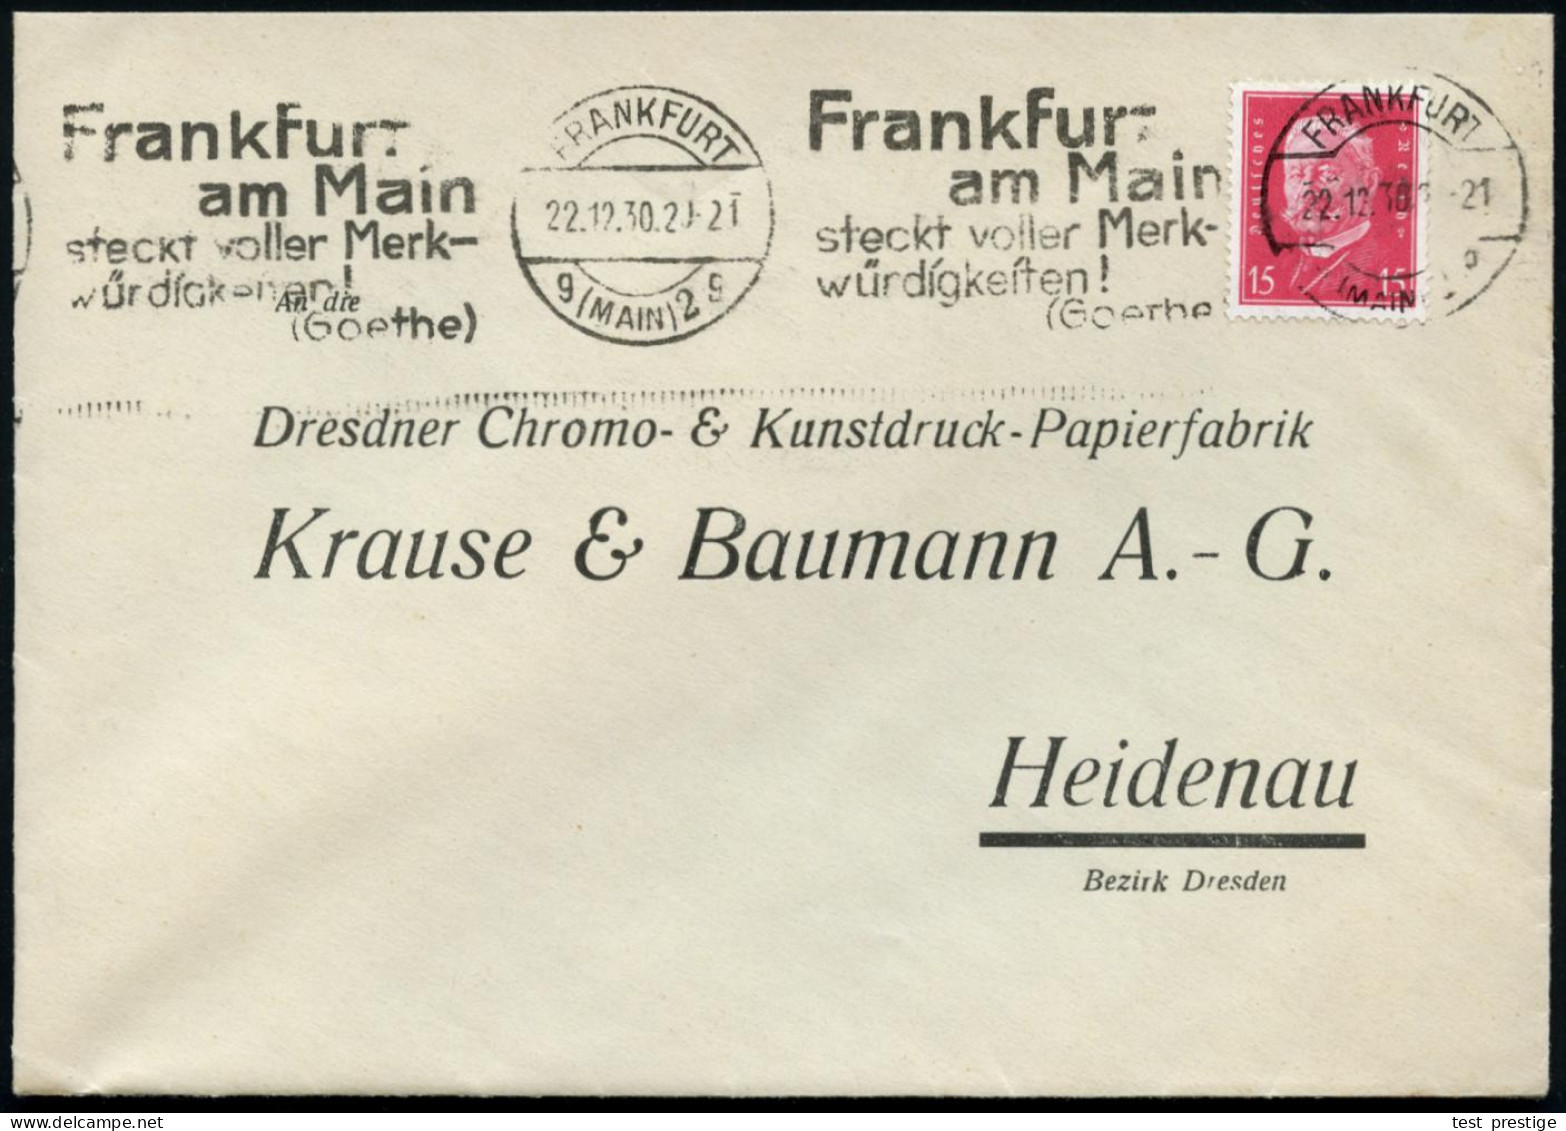 FRANKFURT/ G(MAIN)2/ G/ Frankfurt/ ..steckt Voller Merk-/ Würdigkeiten!/ (Goethe) 1931 (18.10.) Band-MWSt Klar Auf Firme - Escritores